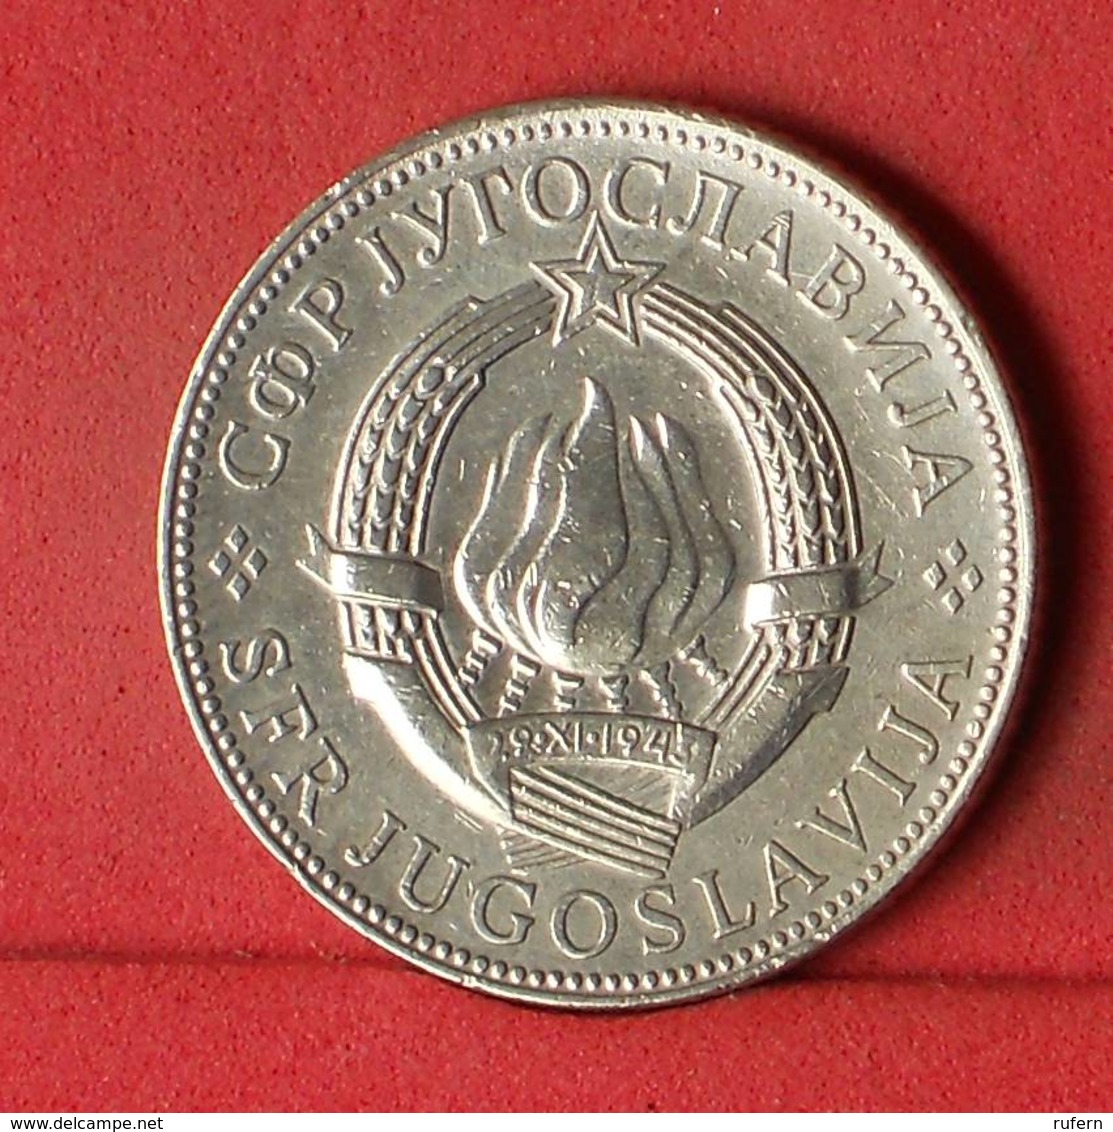 YUGOSLAVIA 10 DINARA 1976 -    KM# 62 - (Nº32439) - Yougoslavie